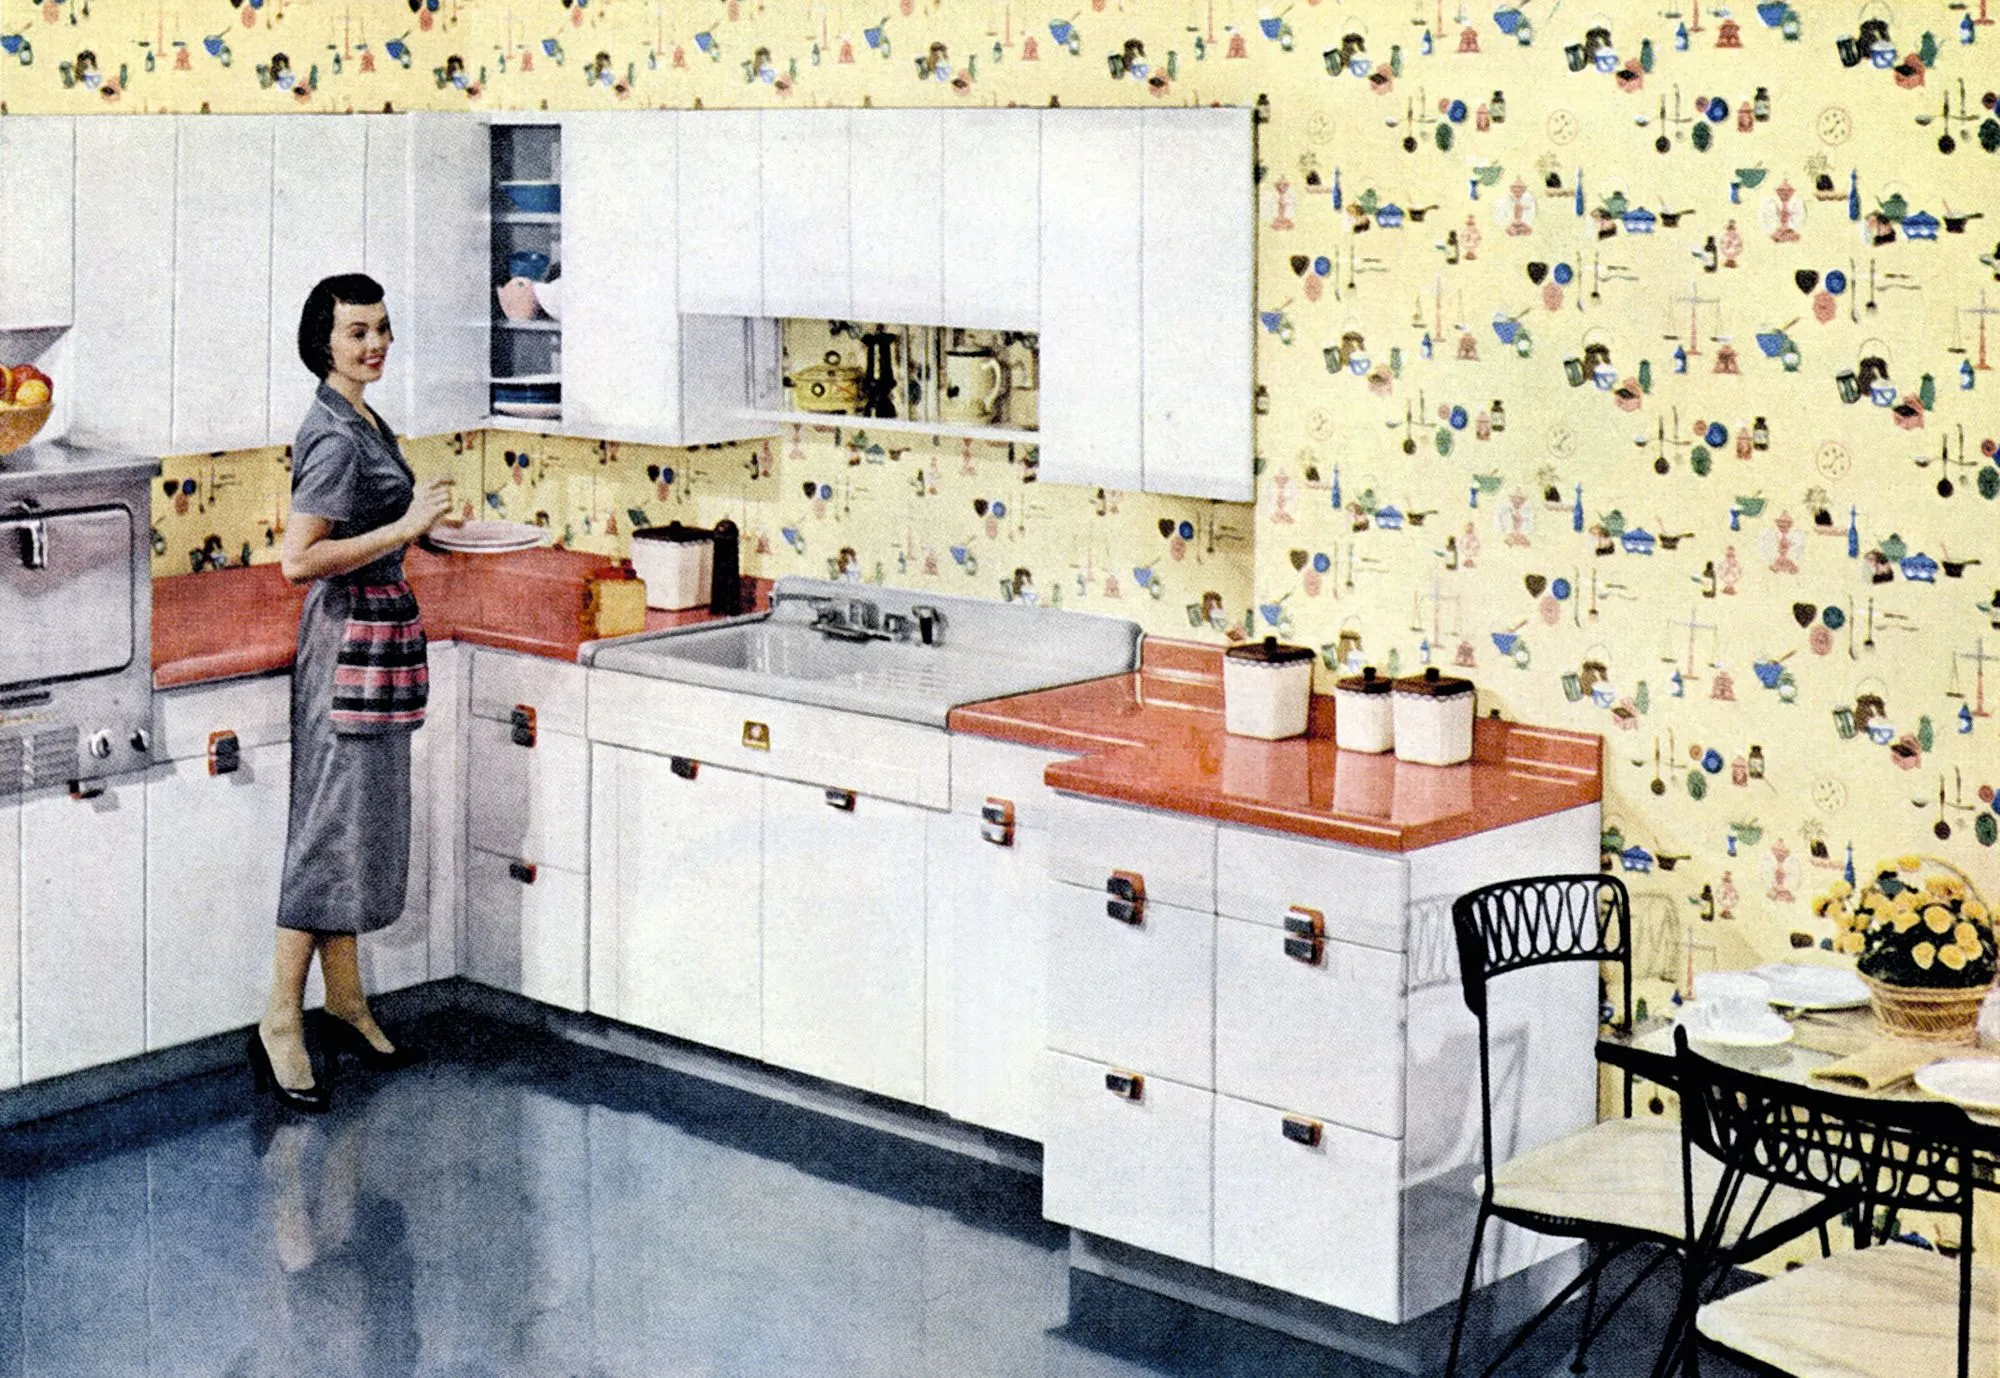 Publicité pour les cuisines American
Standard et les revêtements muraux
anti-salissures Glendura avril 1956